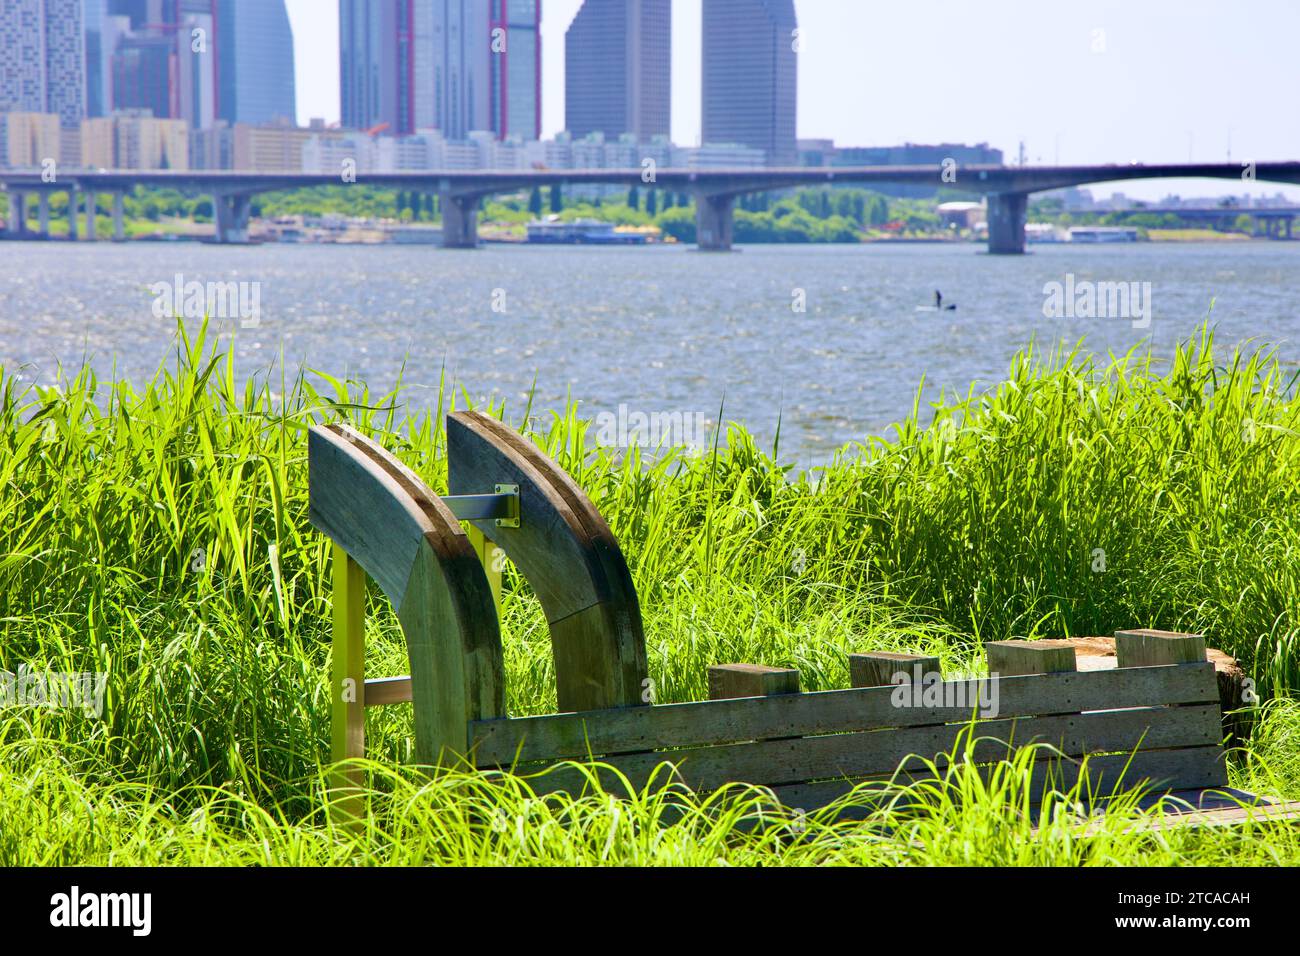 L'installazione 'Playscape' nel Parco d'Arte di Hangang presenta una panchina di riposo realizzata con tecniche tradizionali di costruzione navale in legno, con un paddleboarde Foto Stock